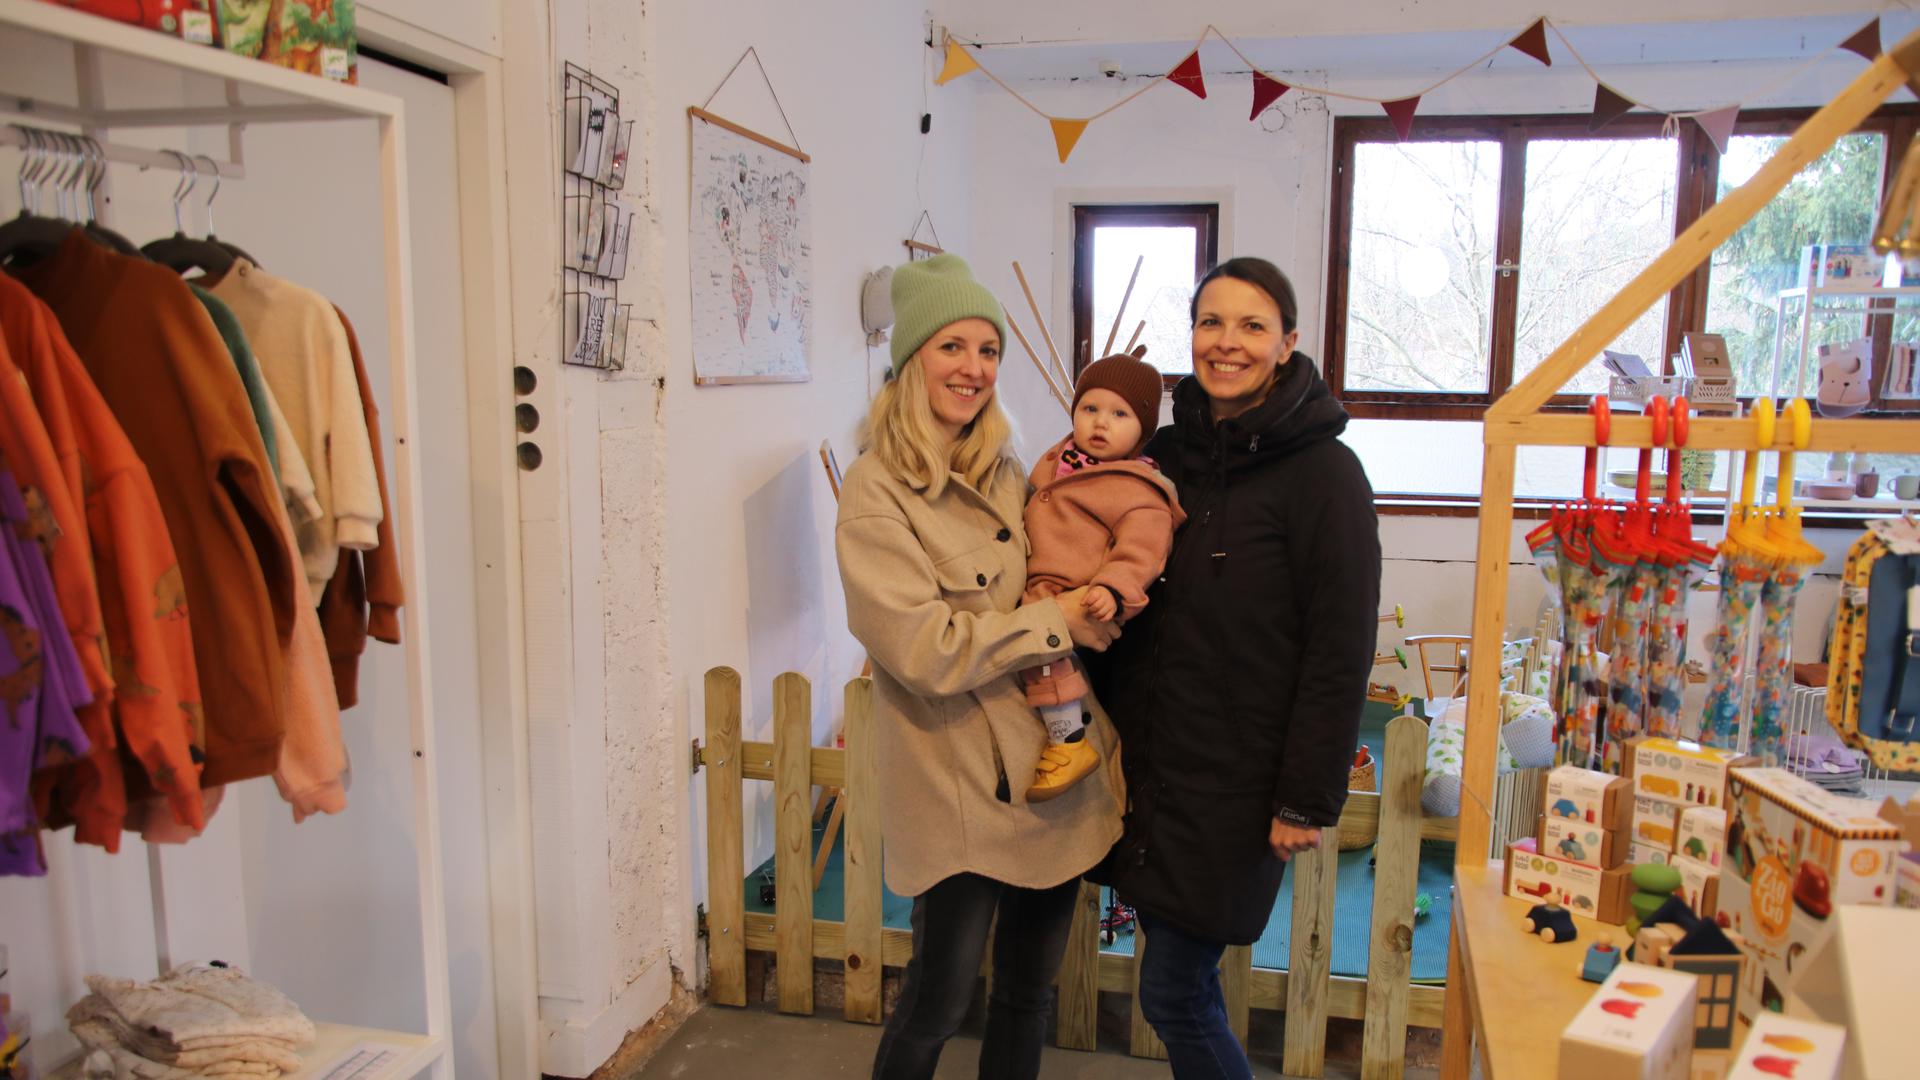 Laden für Kinder und Babys: Ann-Cathrin Notheis (von links) mit Töchterchen Frida und Freundin Alena Mühlhäuser in ihrem Conceptstore „Lille Orm“.